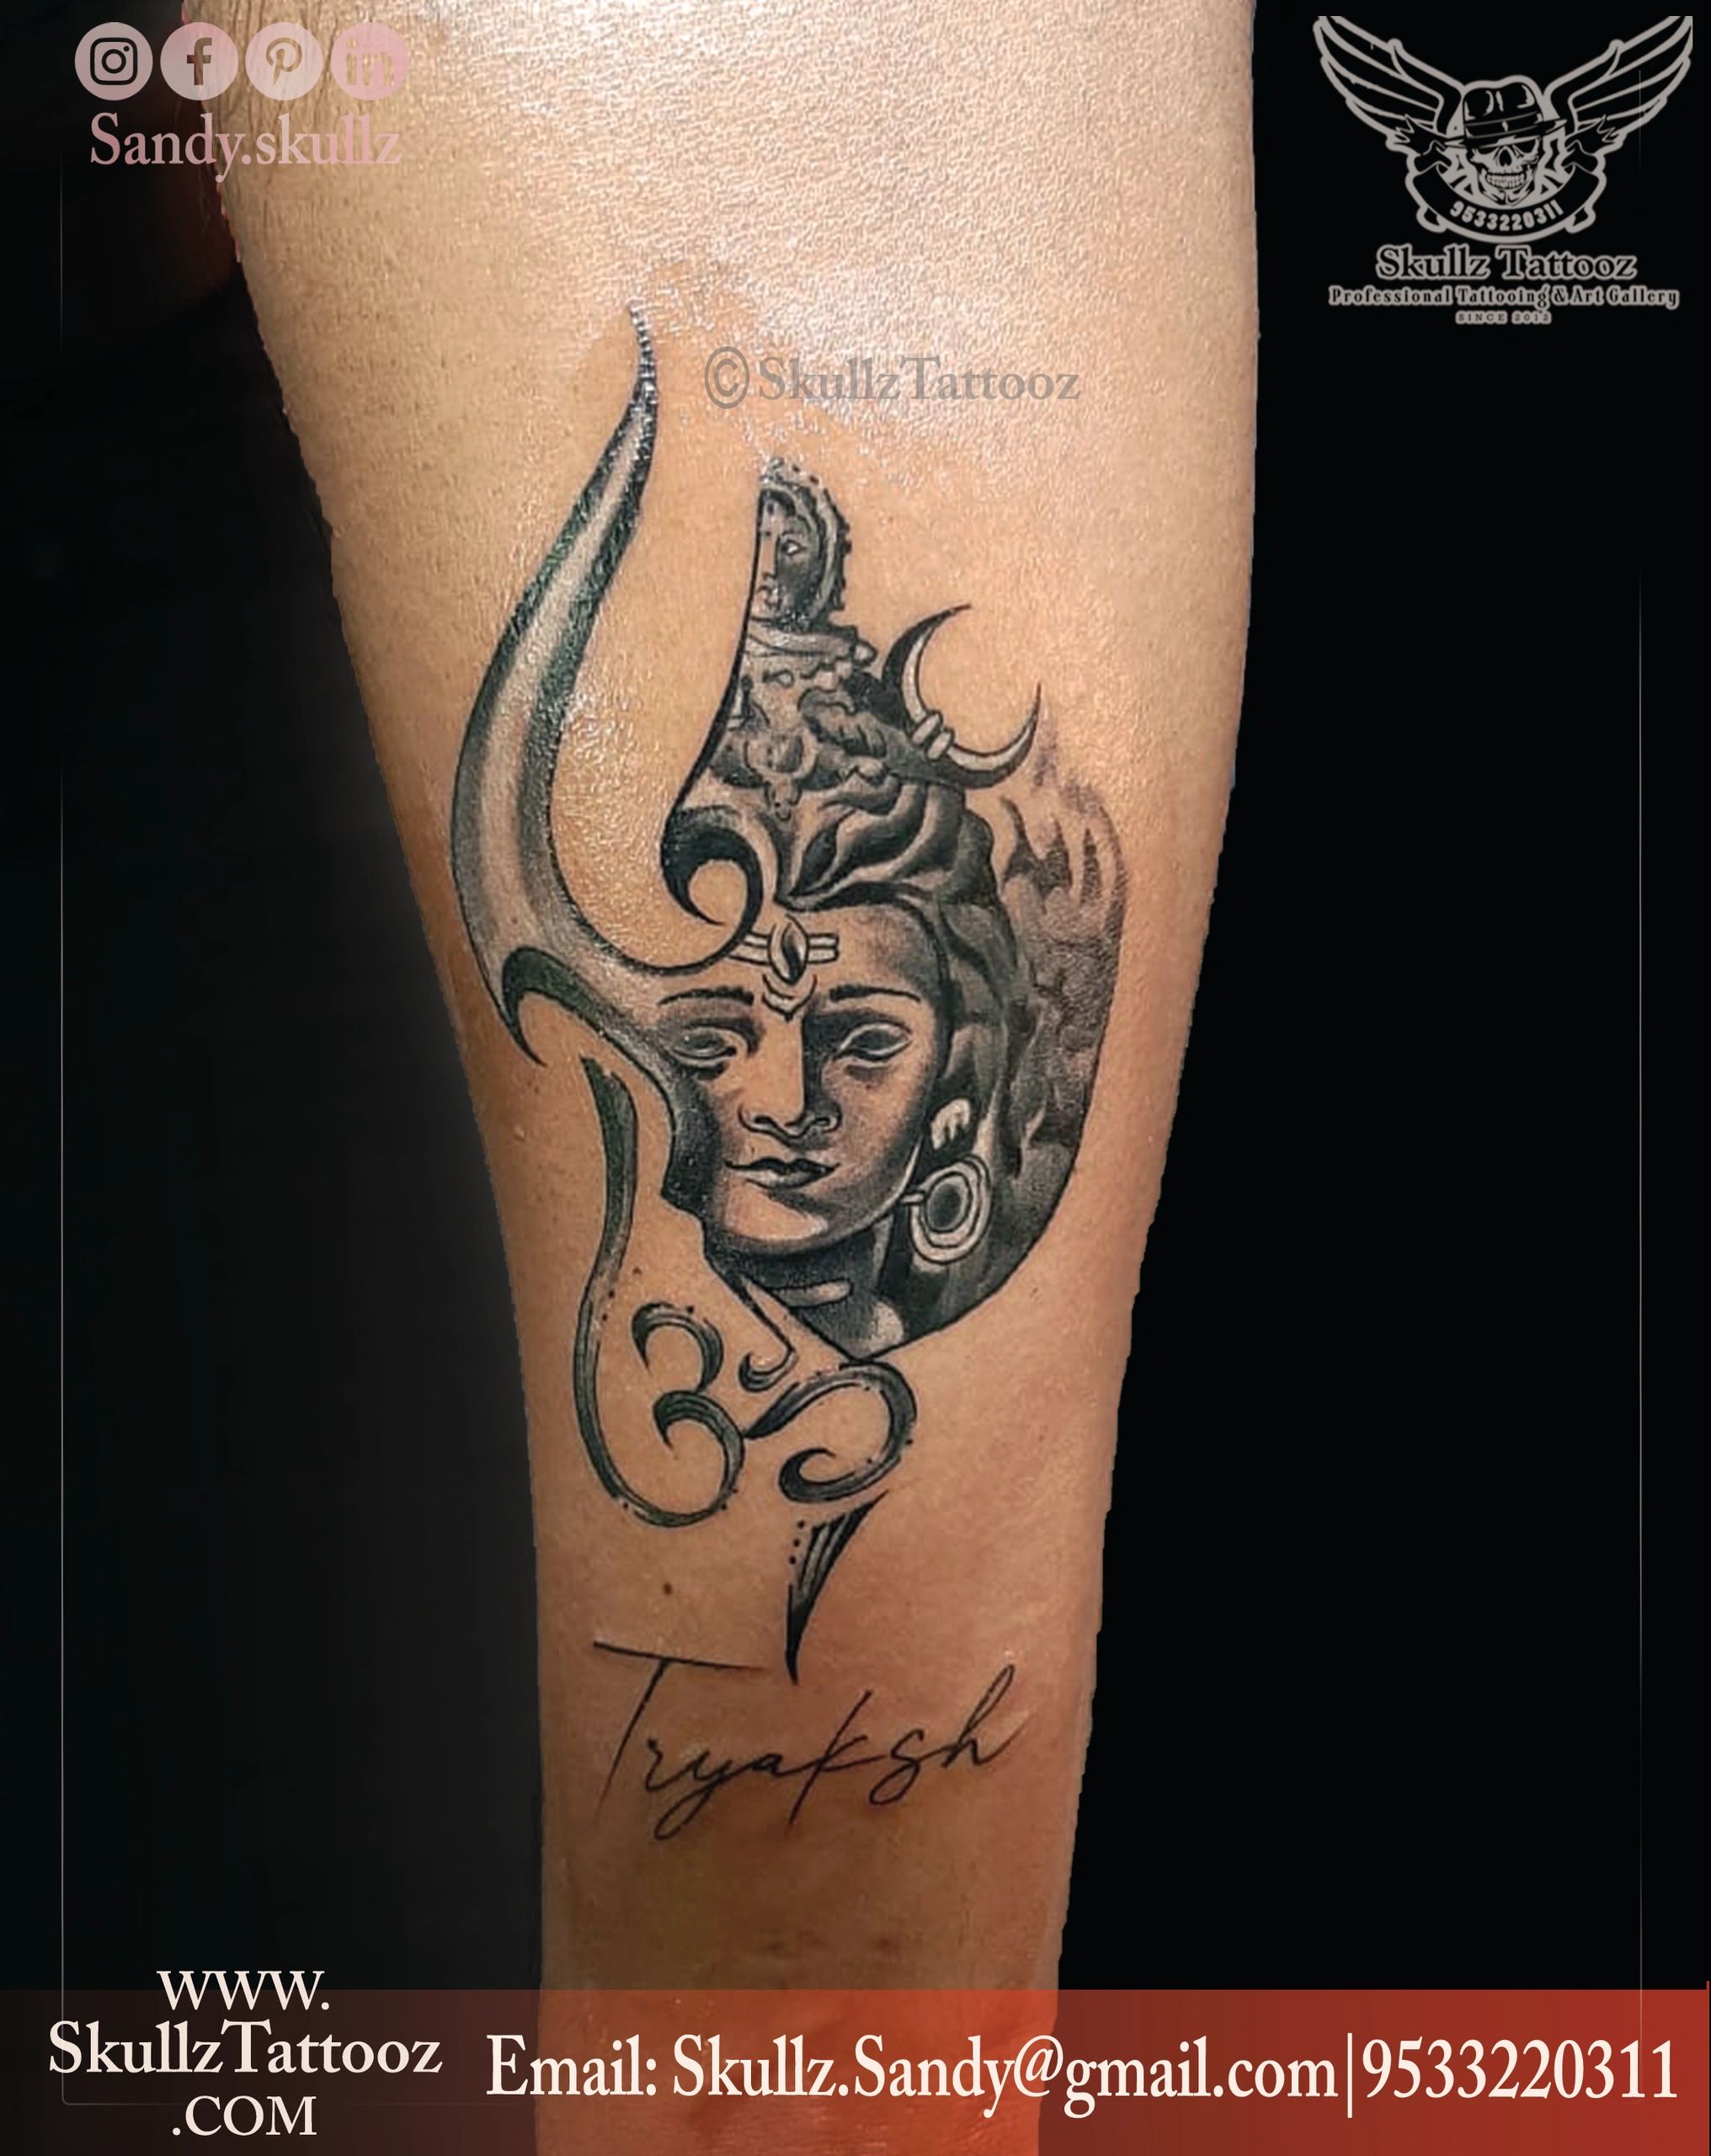 Tattoo uploaded by Samurai Tattoo mehsana  Mahadev tattoo Mahadev Trishul  tattoo Trishul tattoo Shiva tattoo  Tattoodo